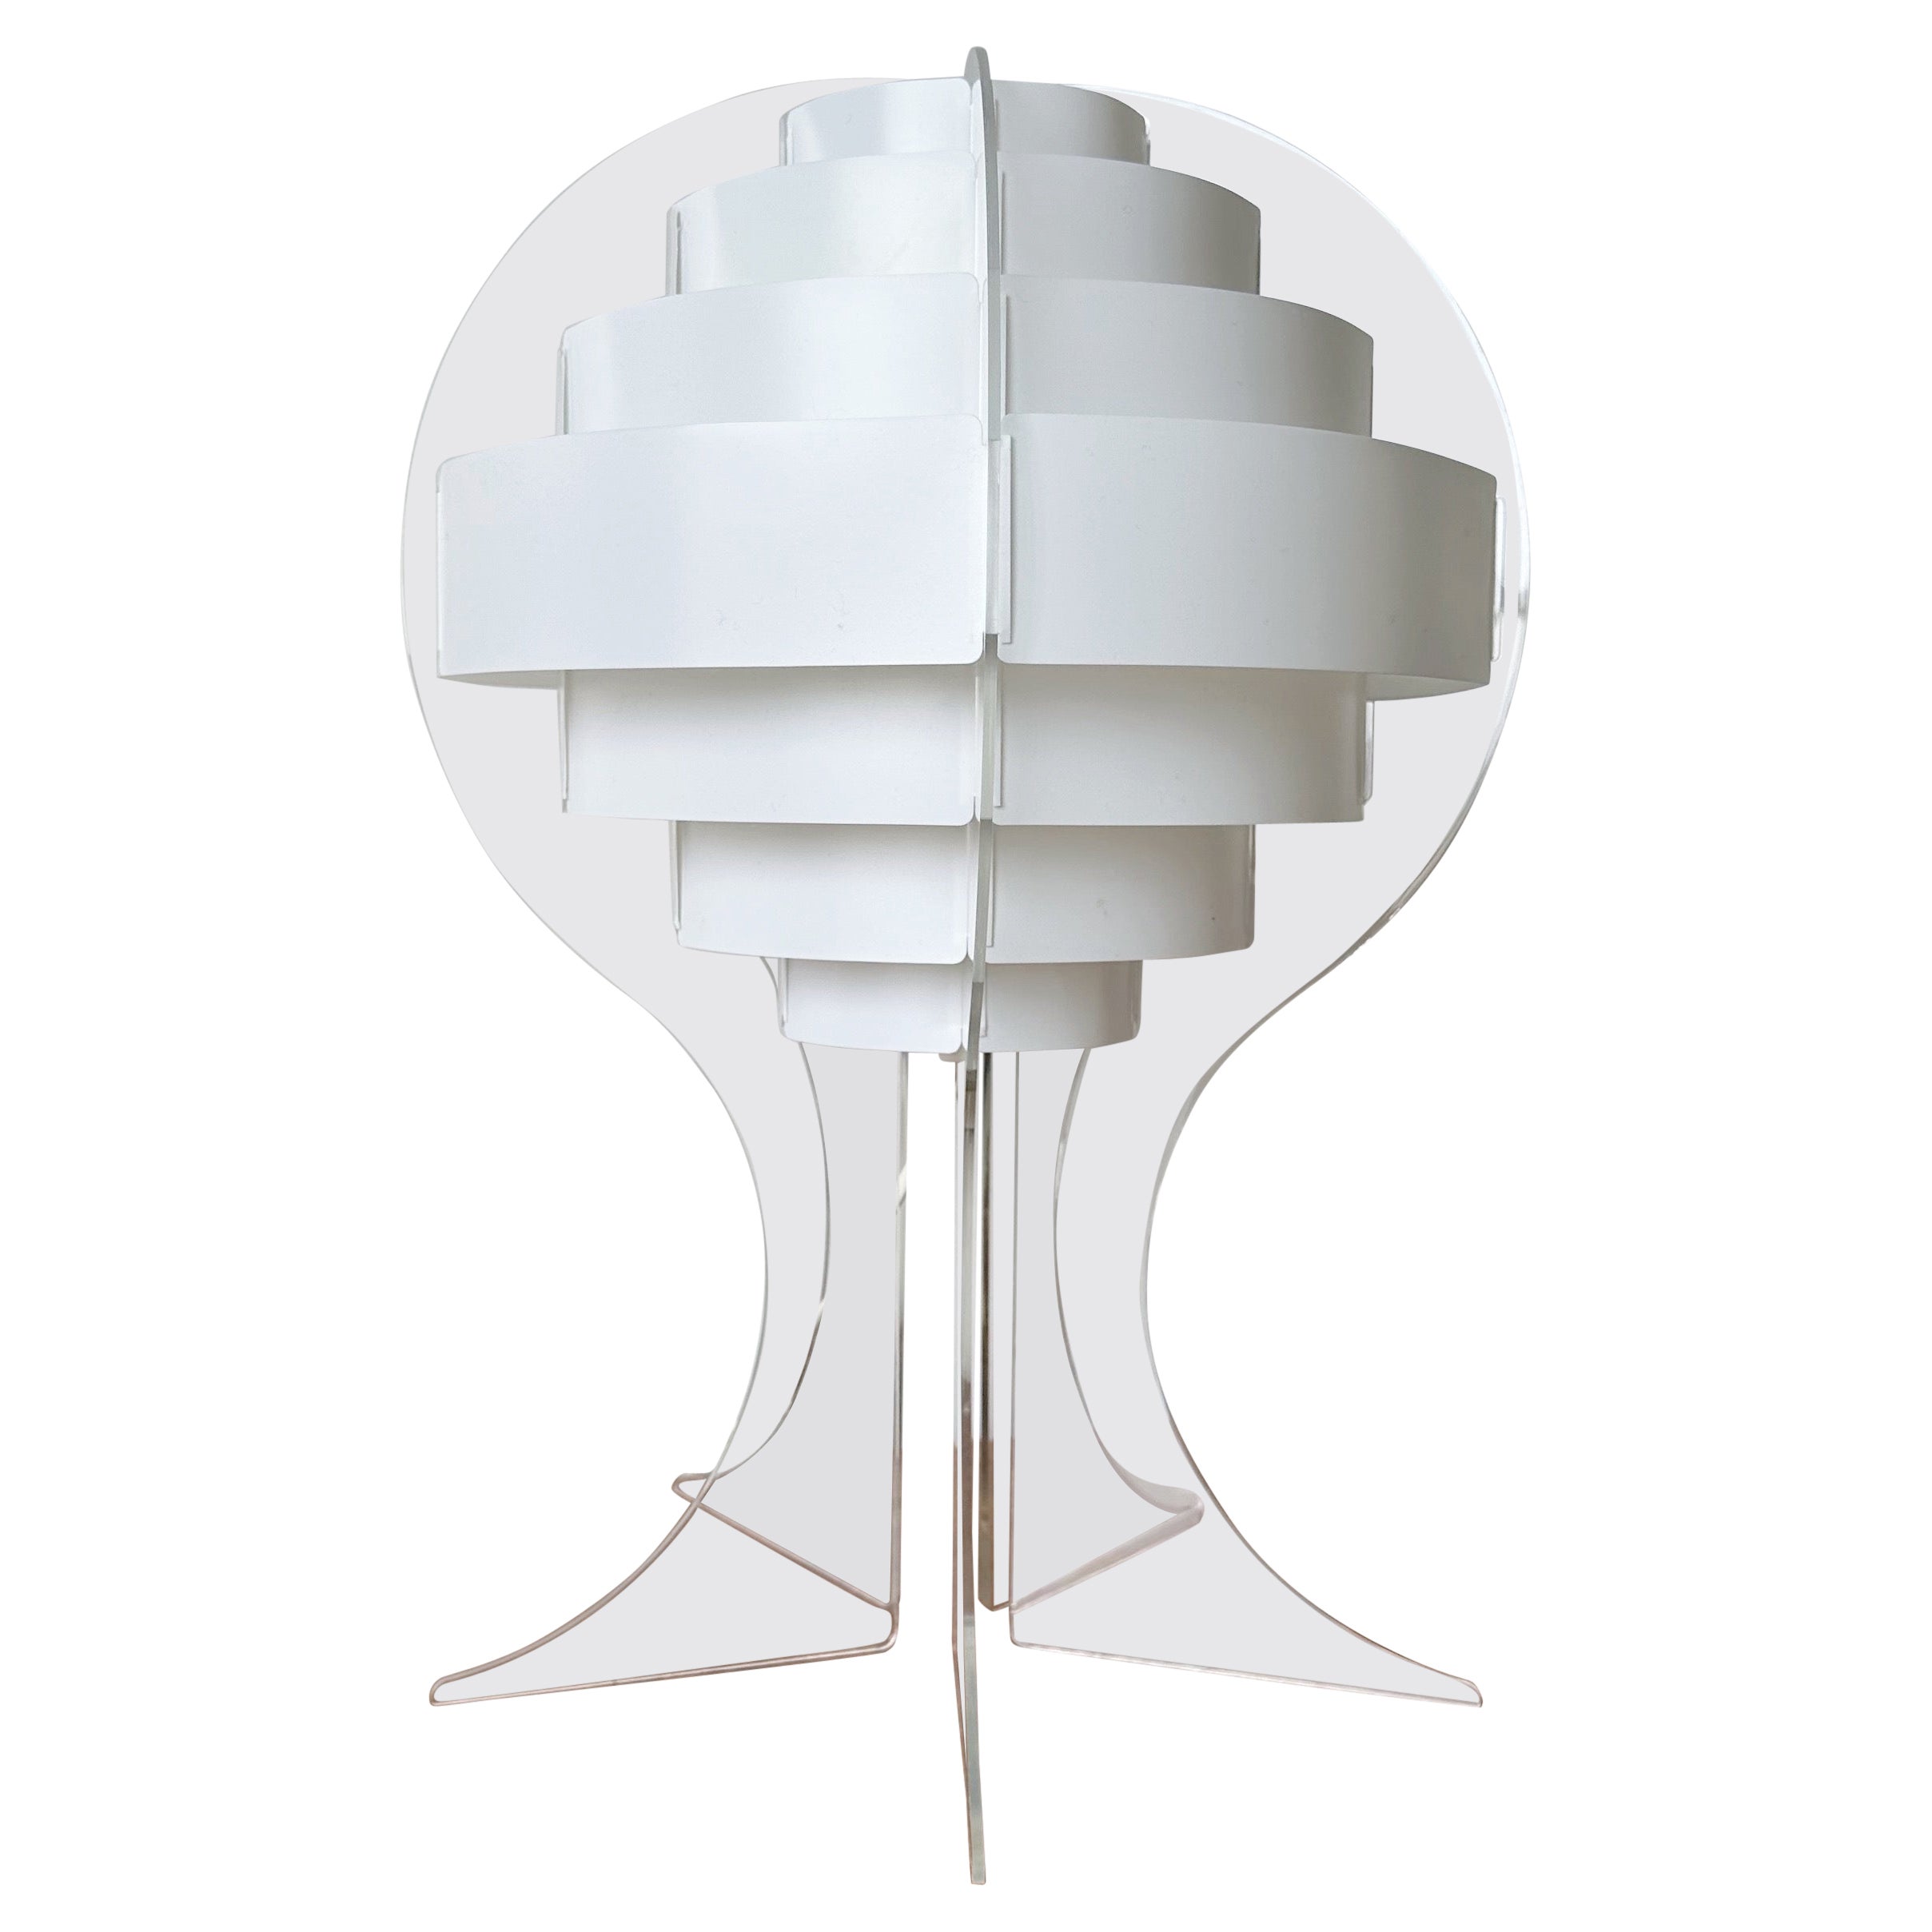 Lakene Strips Table Lamp by Flemming Brylle & Preben Jacobsen for IKEA